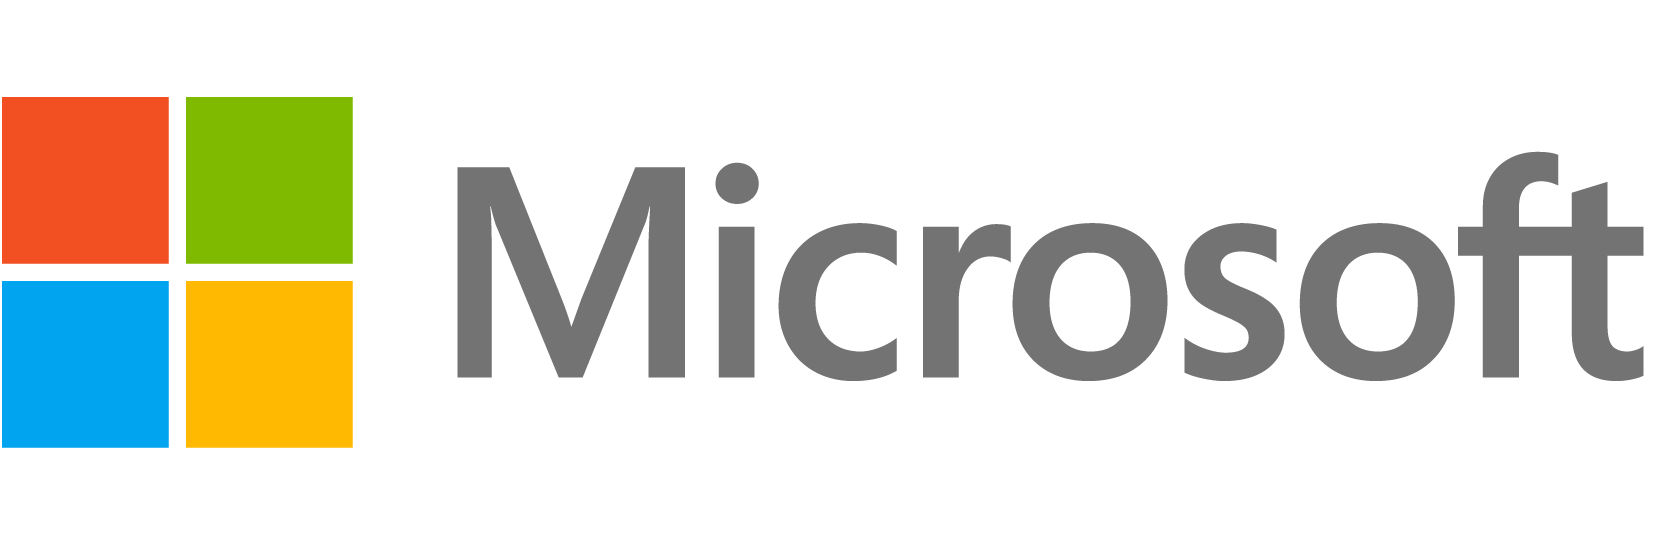 NETSCOUT and Microsoft alliance